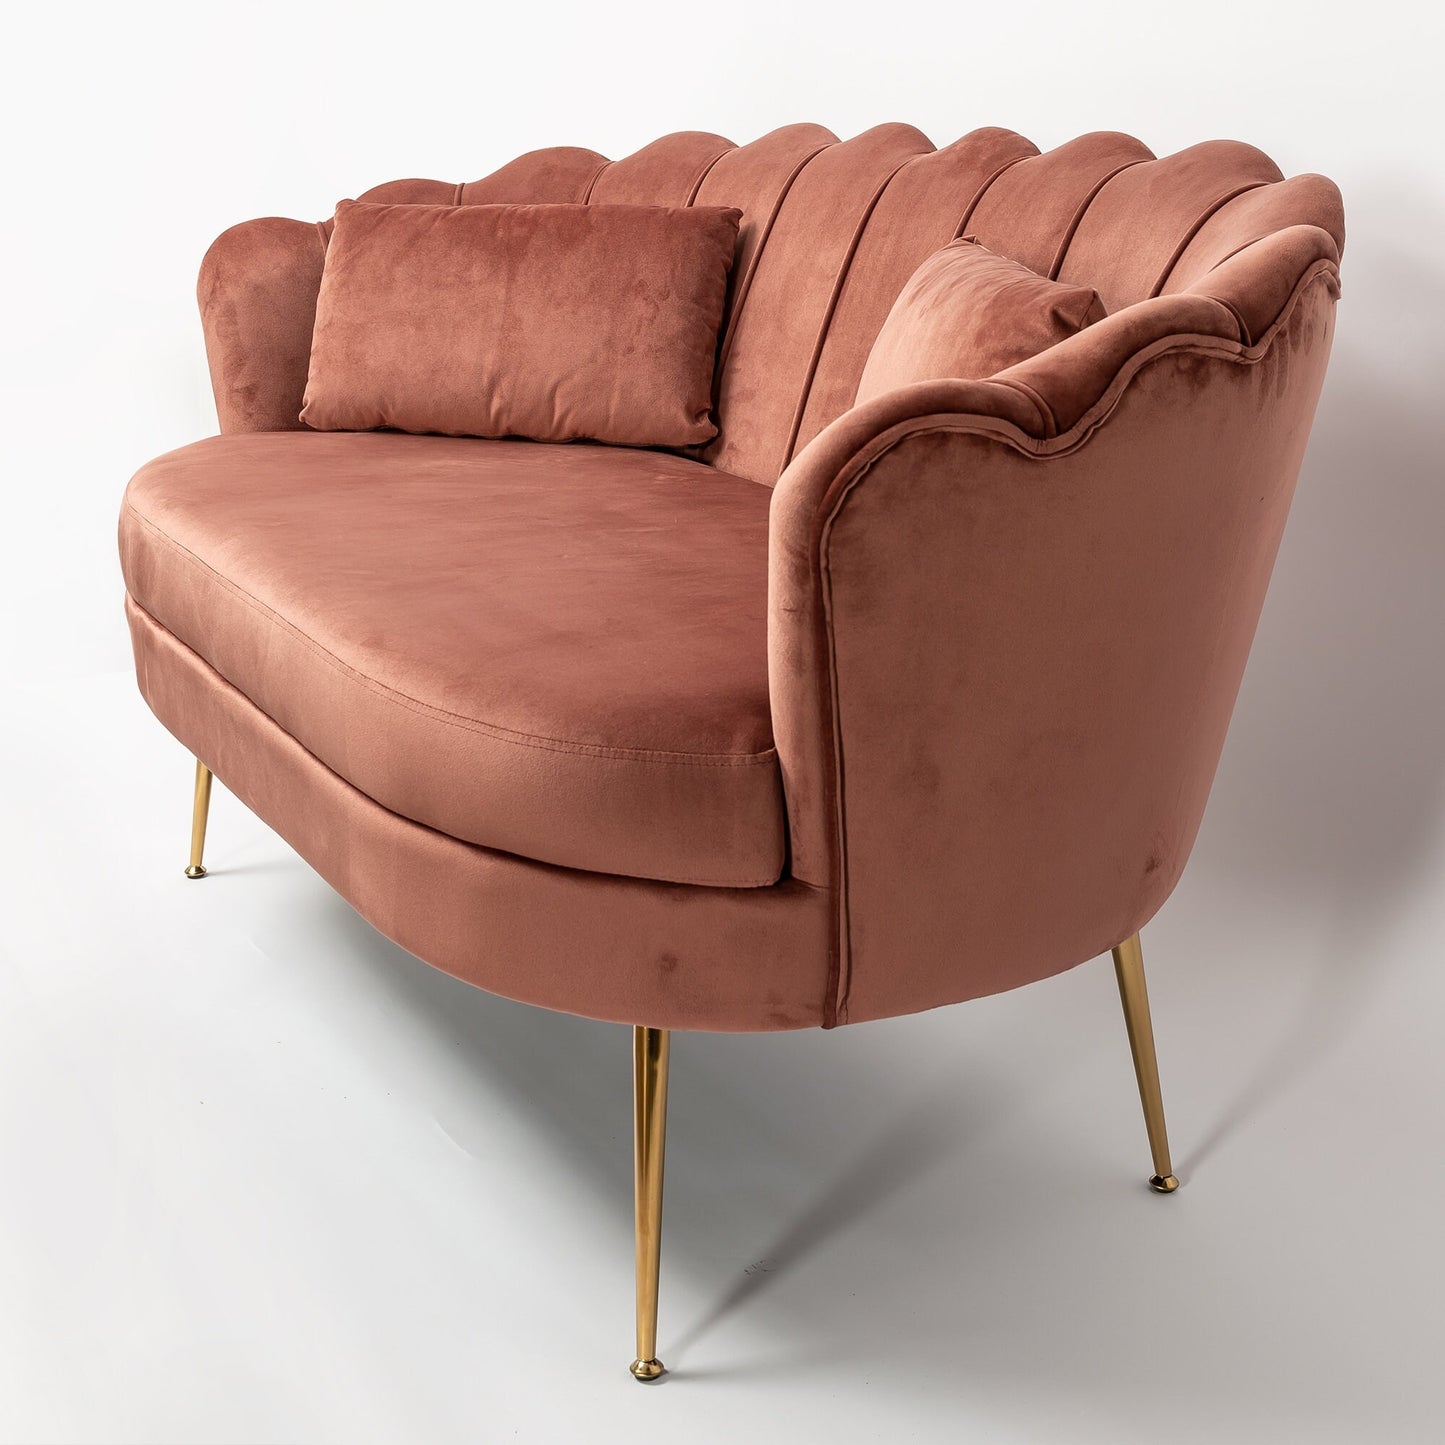 Dusky Pink Velvet 2 Seater Sofa With Gold Legs